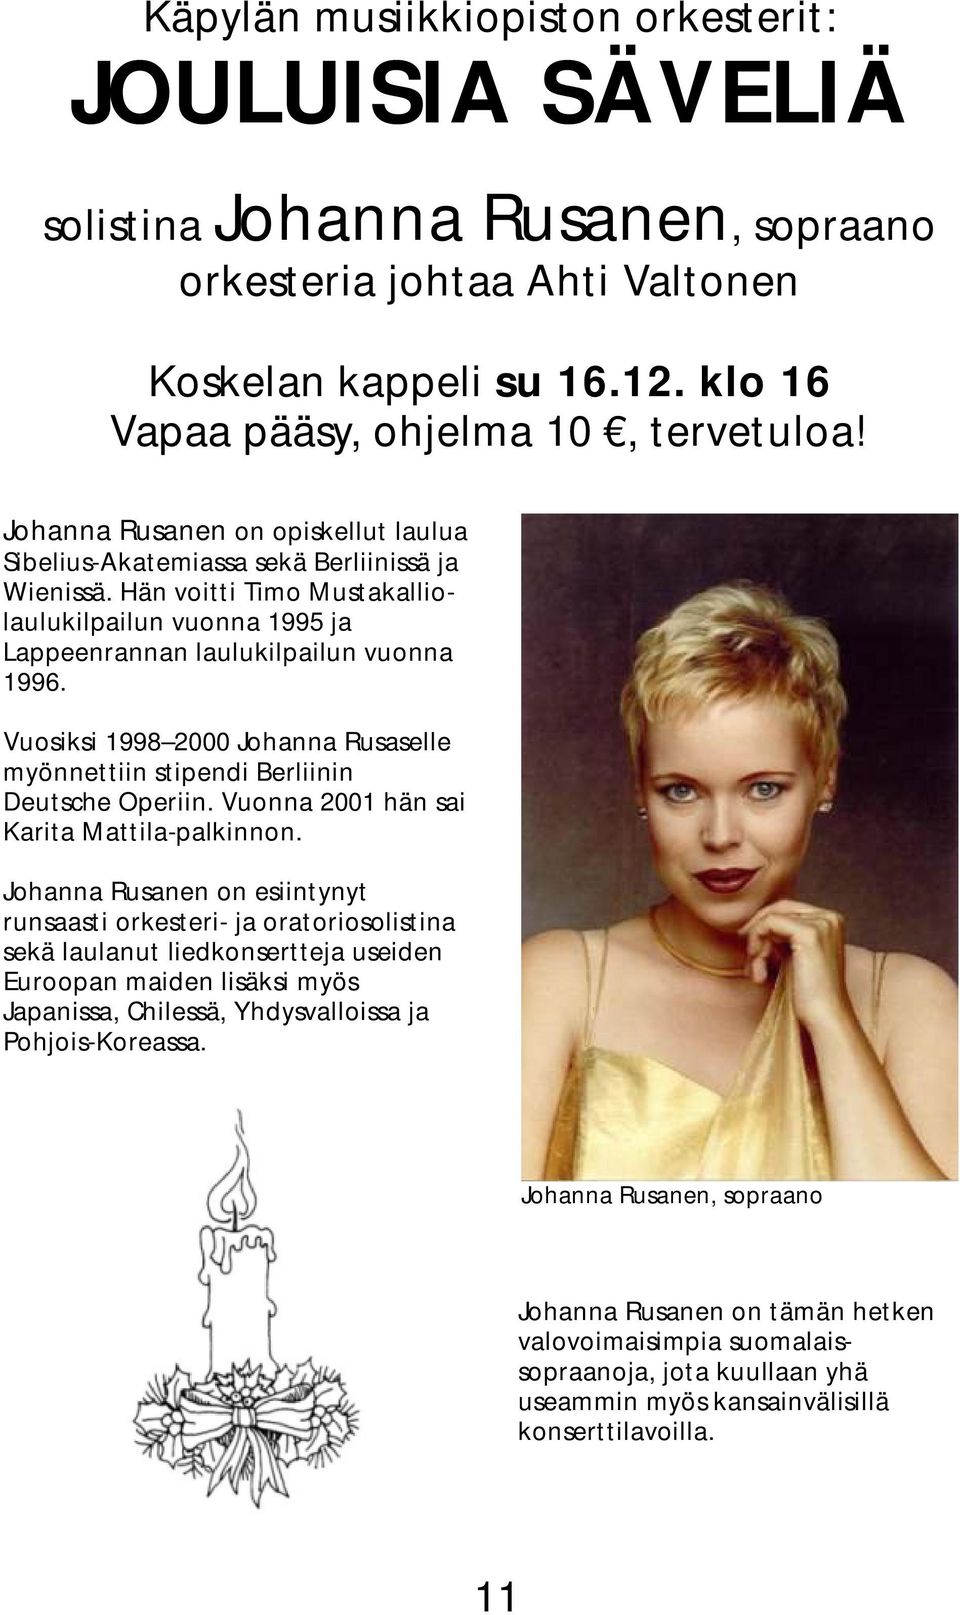 Vuosiksi 1998 2000 Johanna Rusaselle myönnettiin stipendi Berliinin Deutsche Operiin. Vuonna 2001 hän sai Karita Mattila-palkinnon.